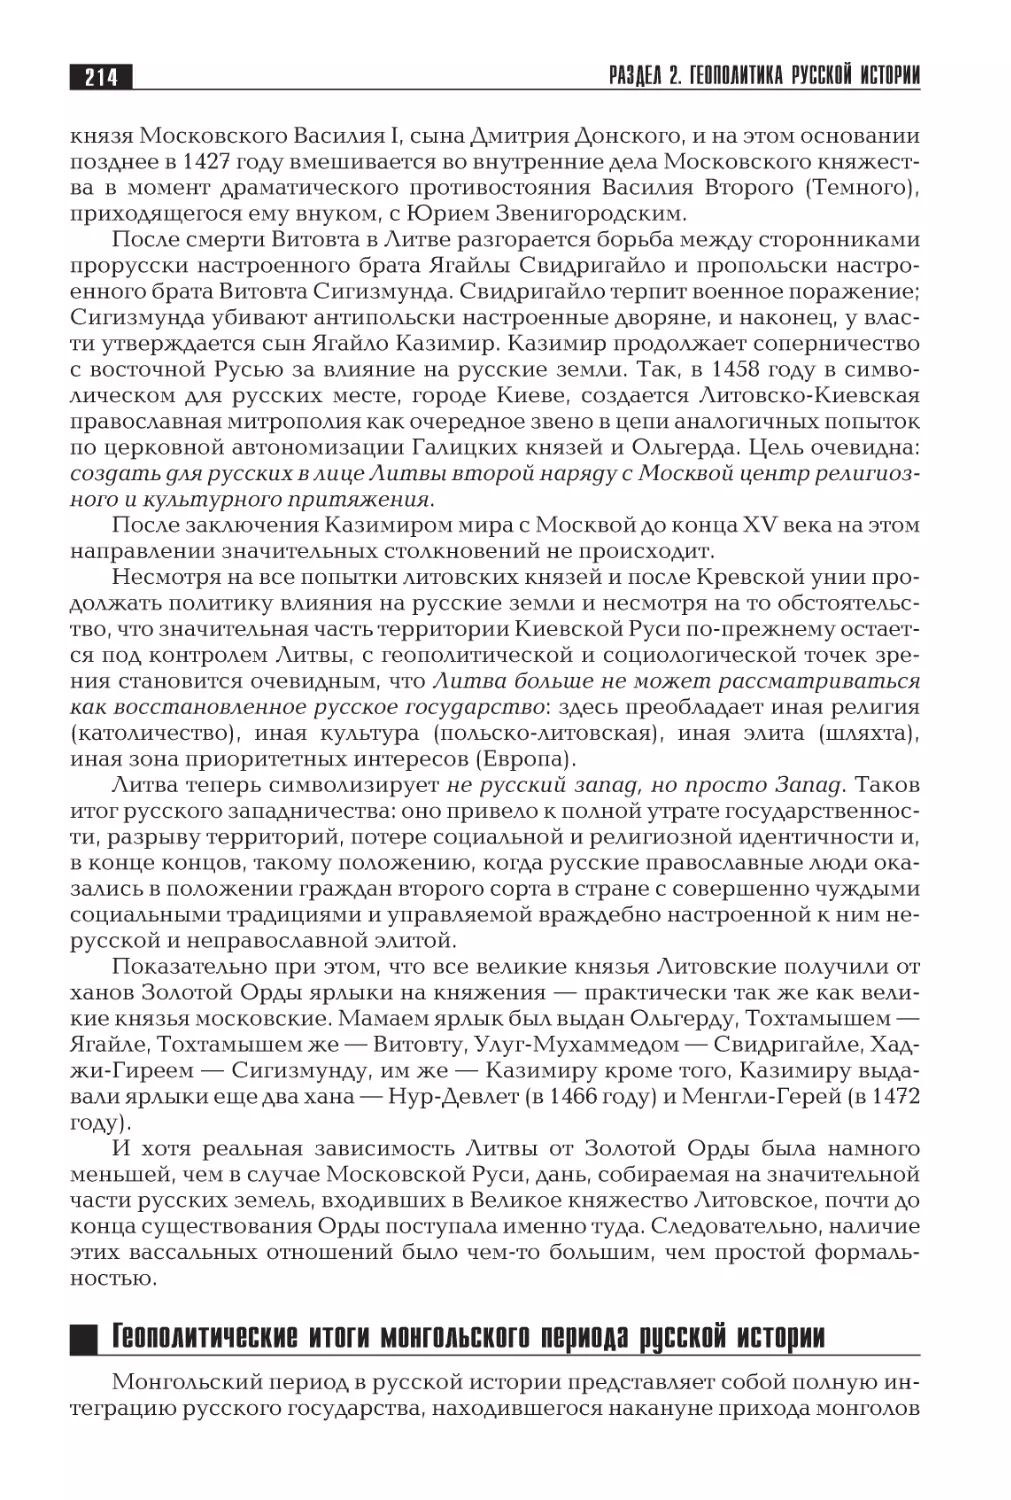 Геополитические итоги монгольского периода русской истории